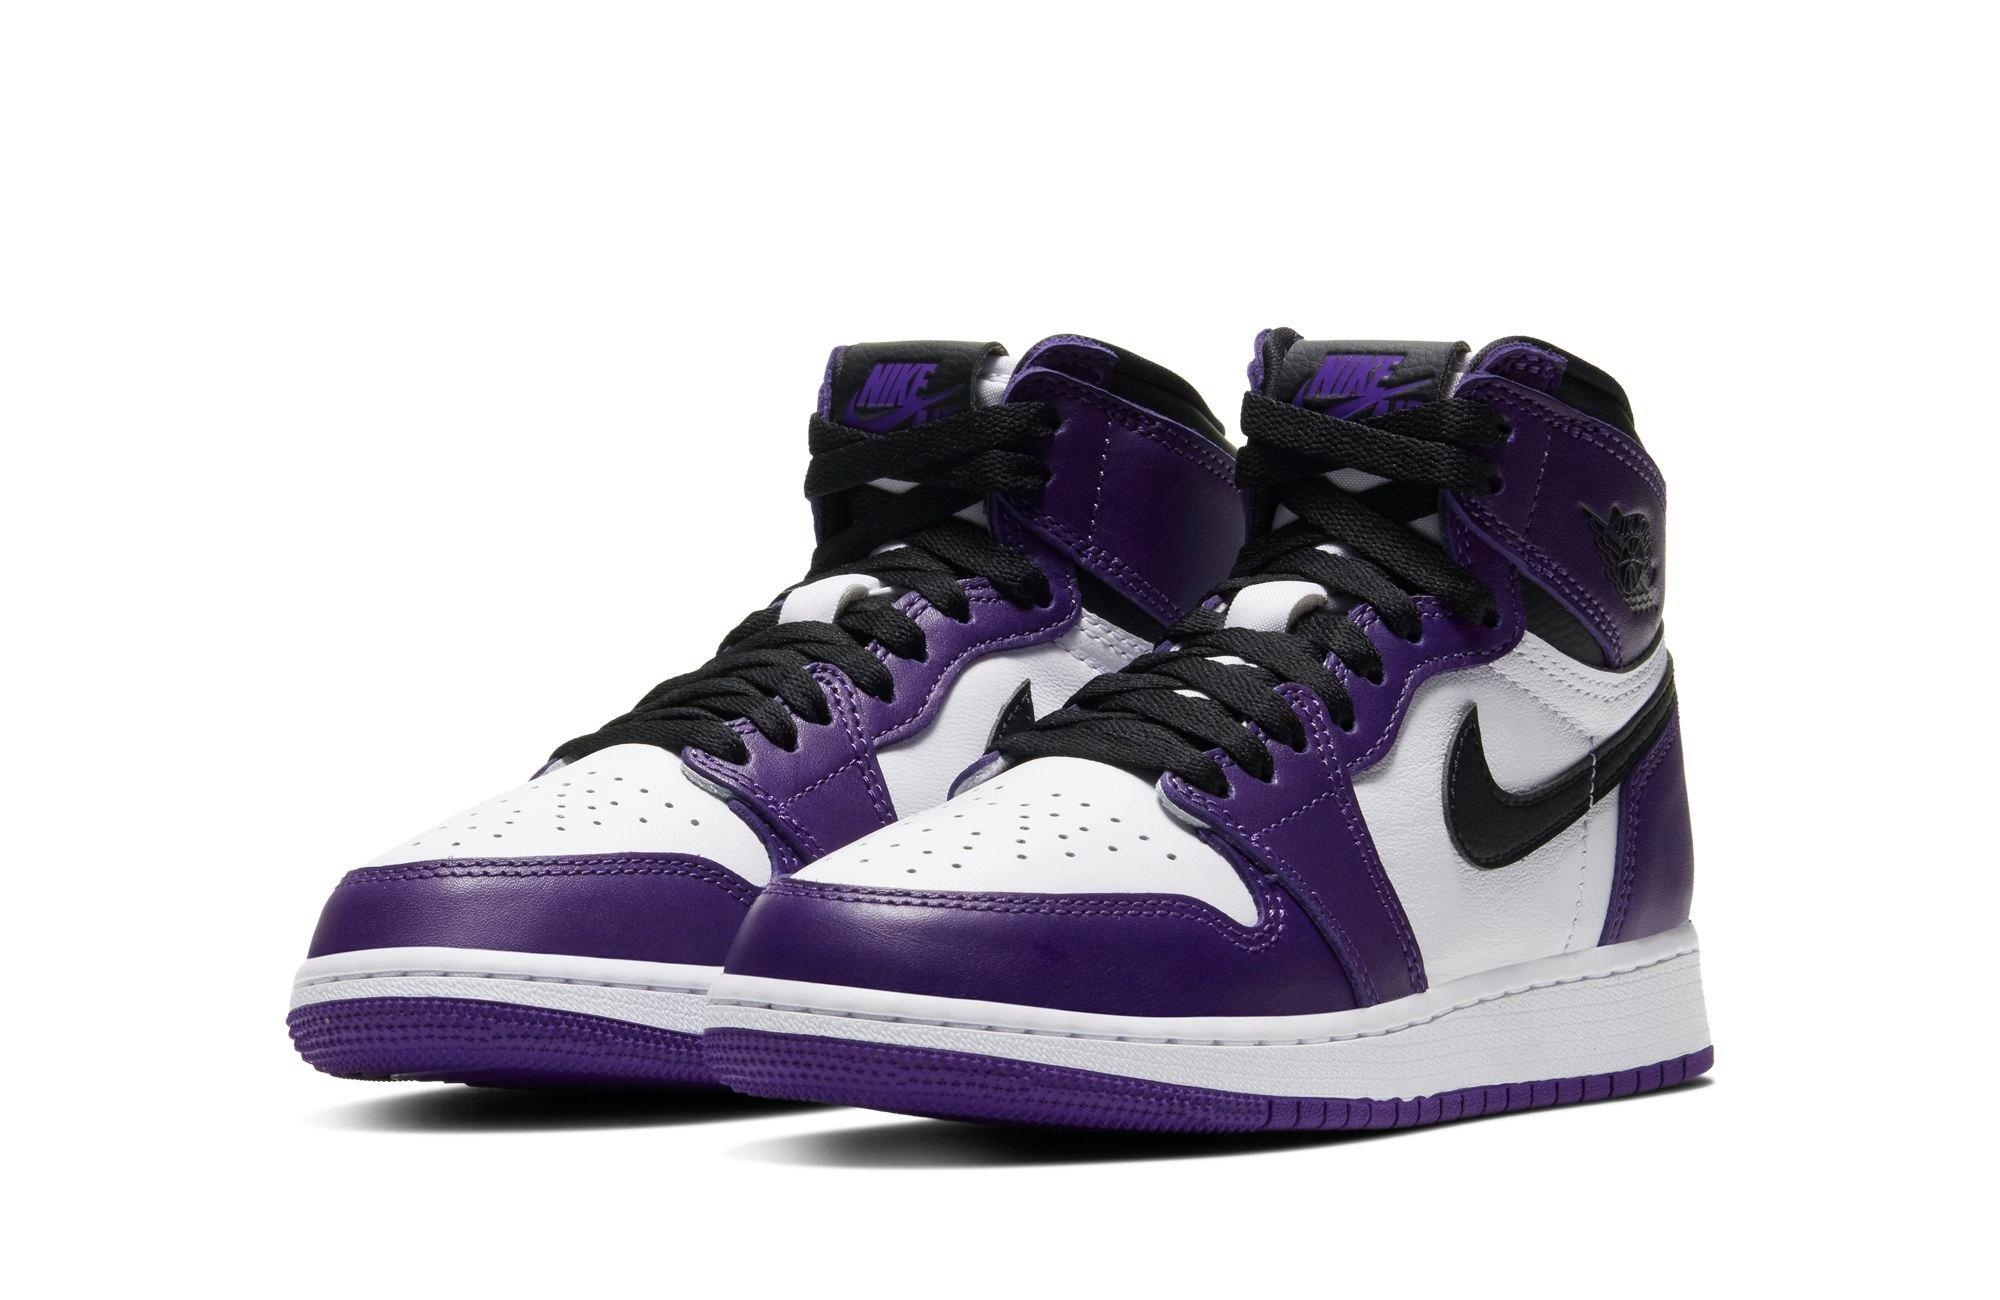 Sneakers Release – Jordan 1 Retro High OG “Court 